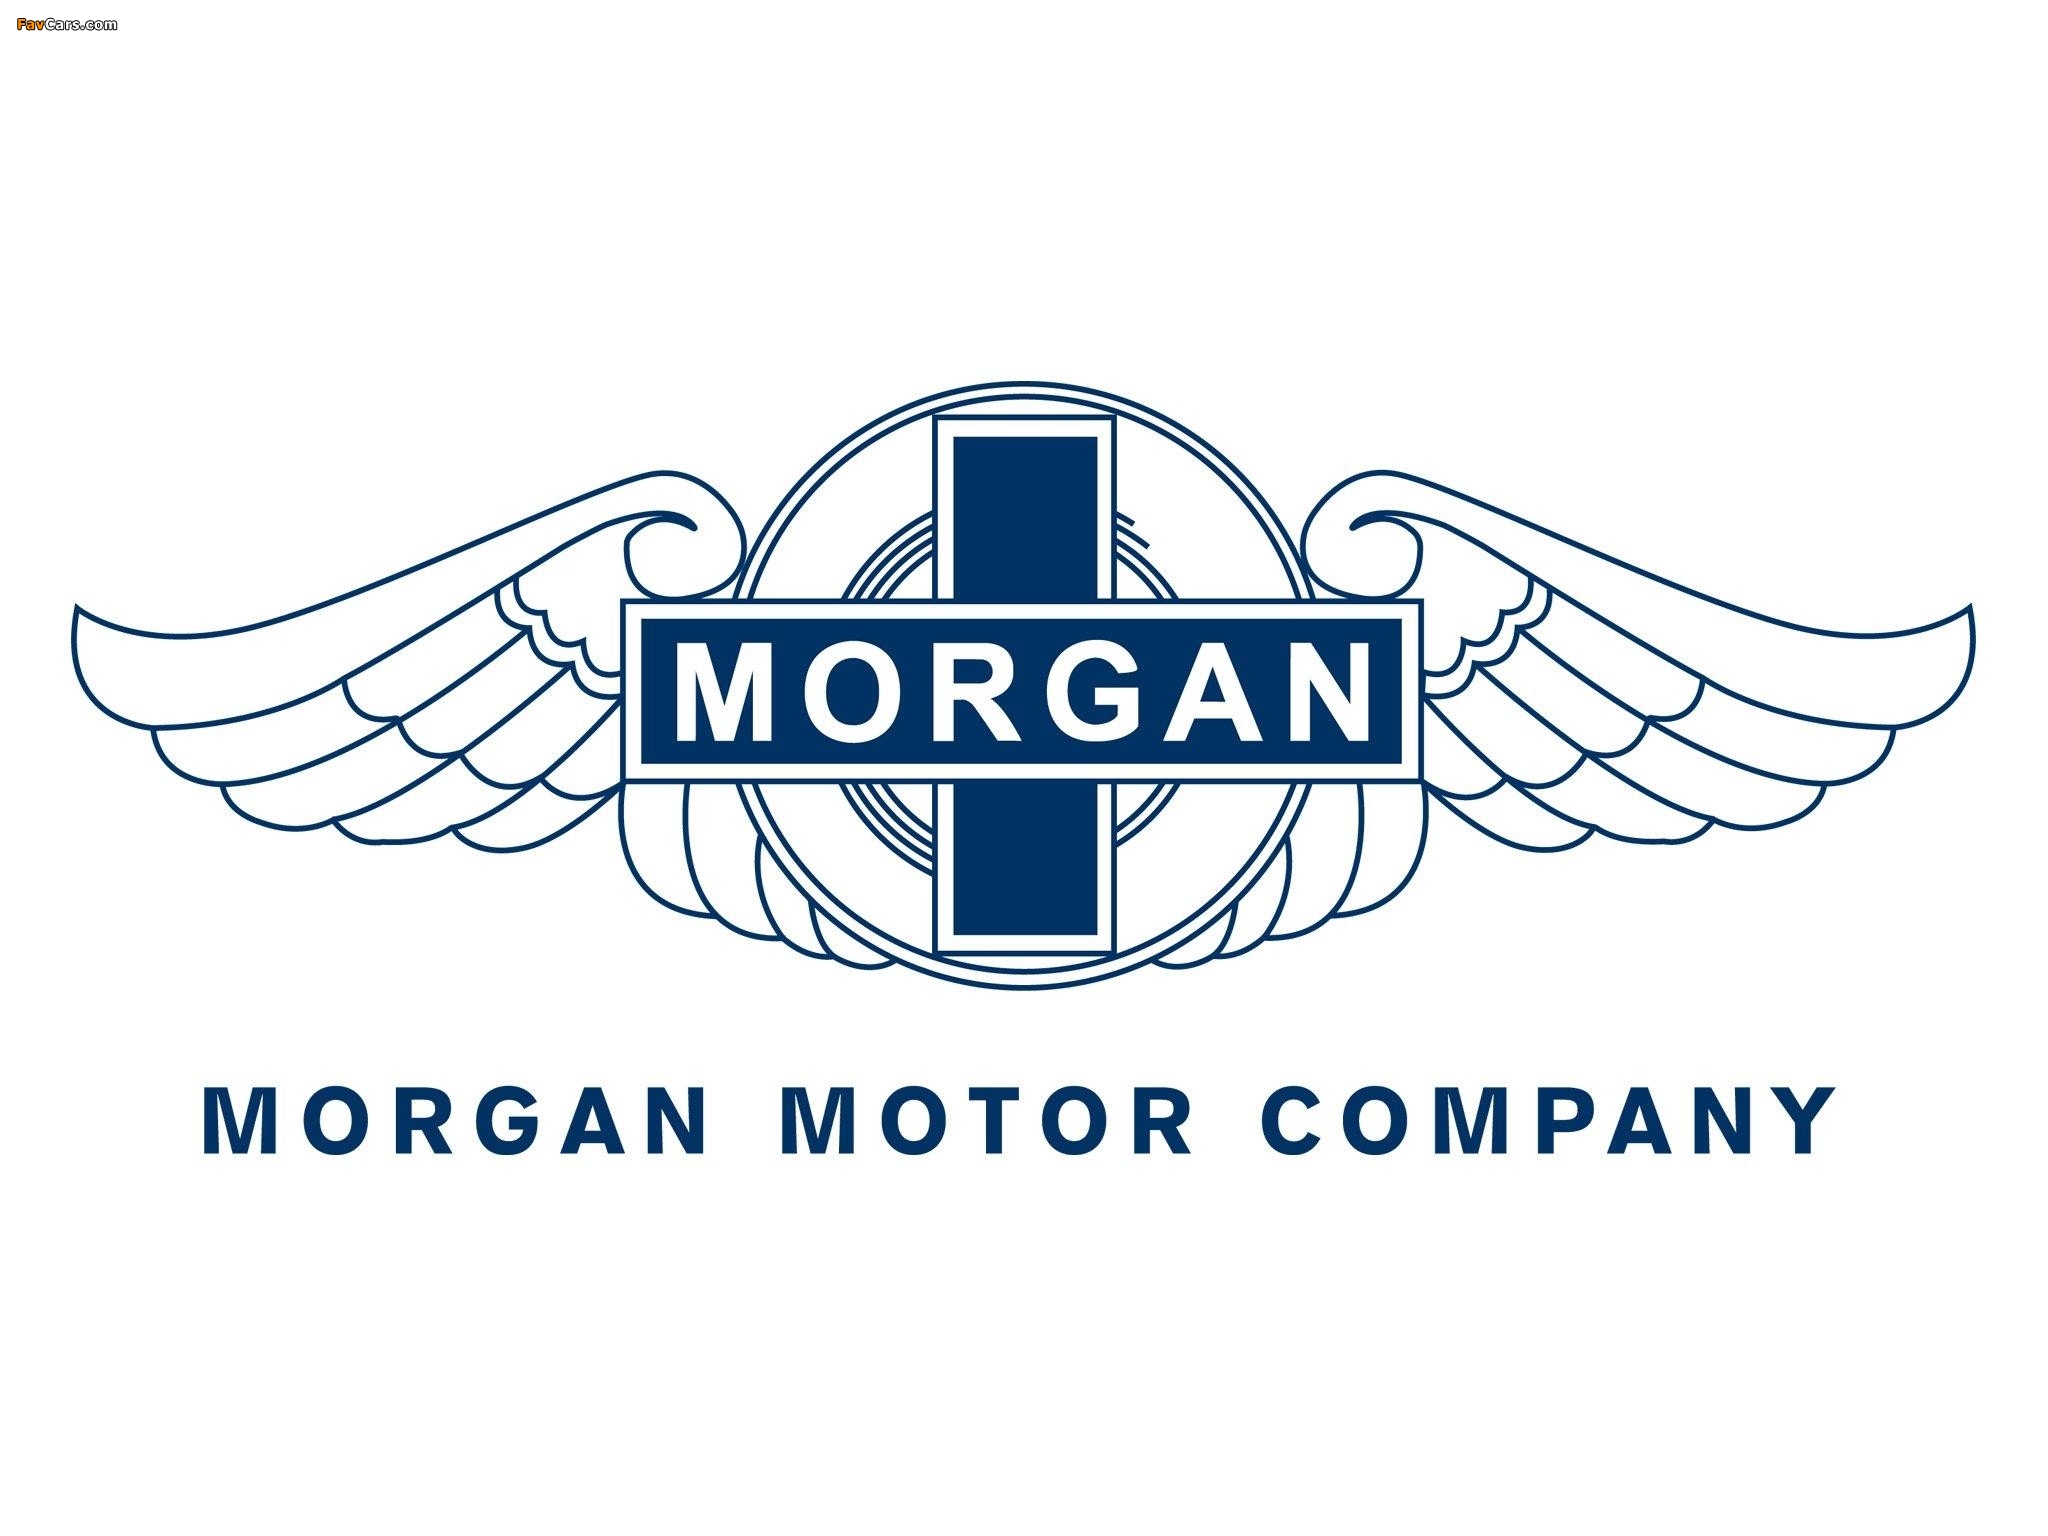 Morgan images (2048 x 1536)